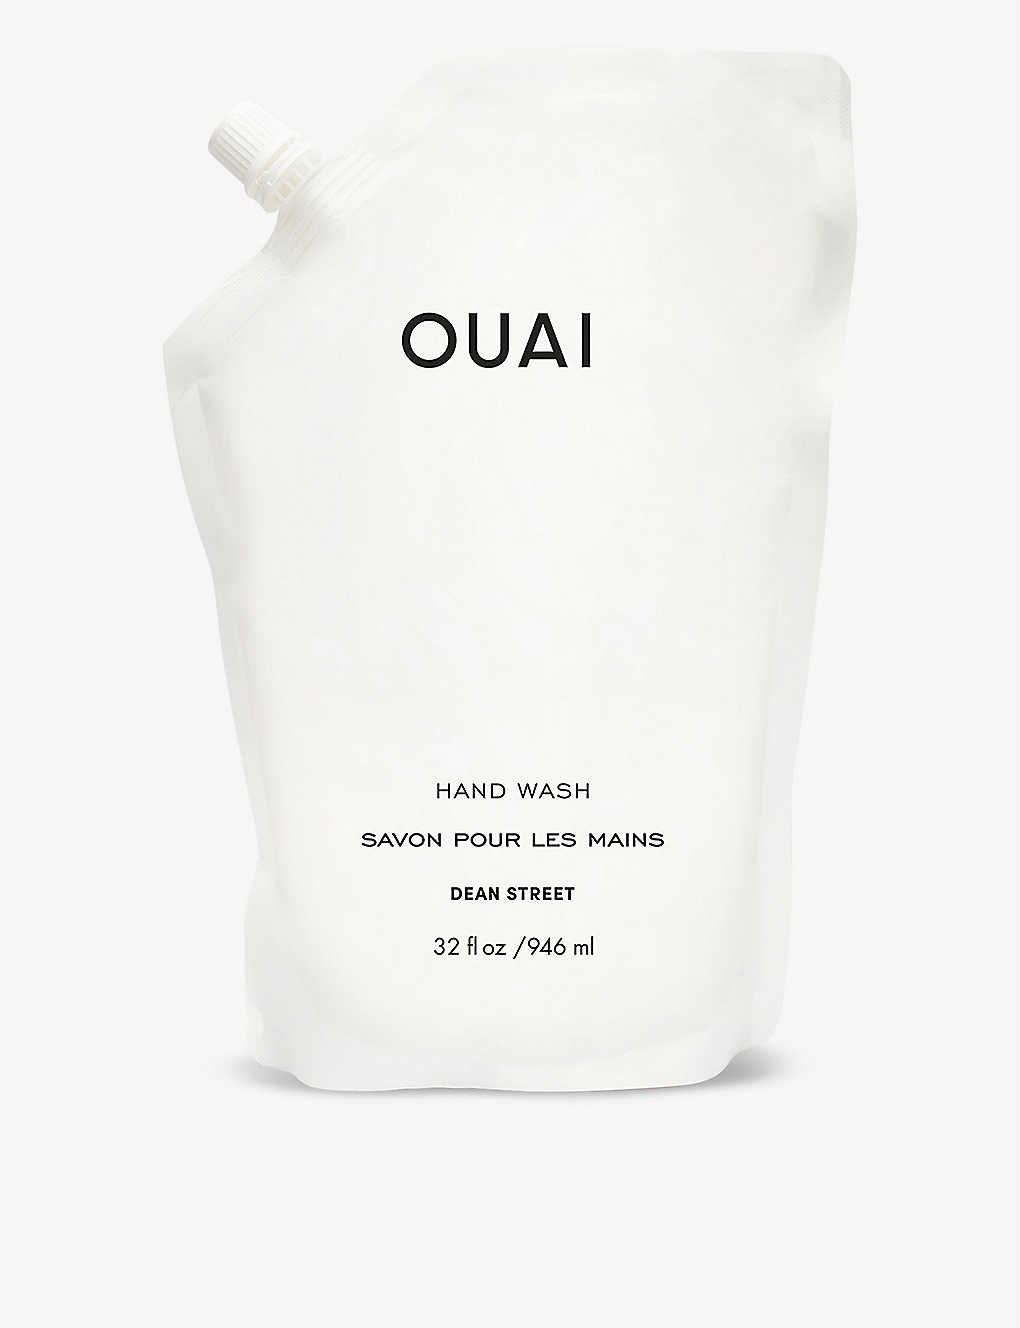 Ouai Hand Wash Refill 946ml